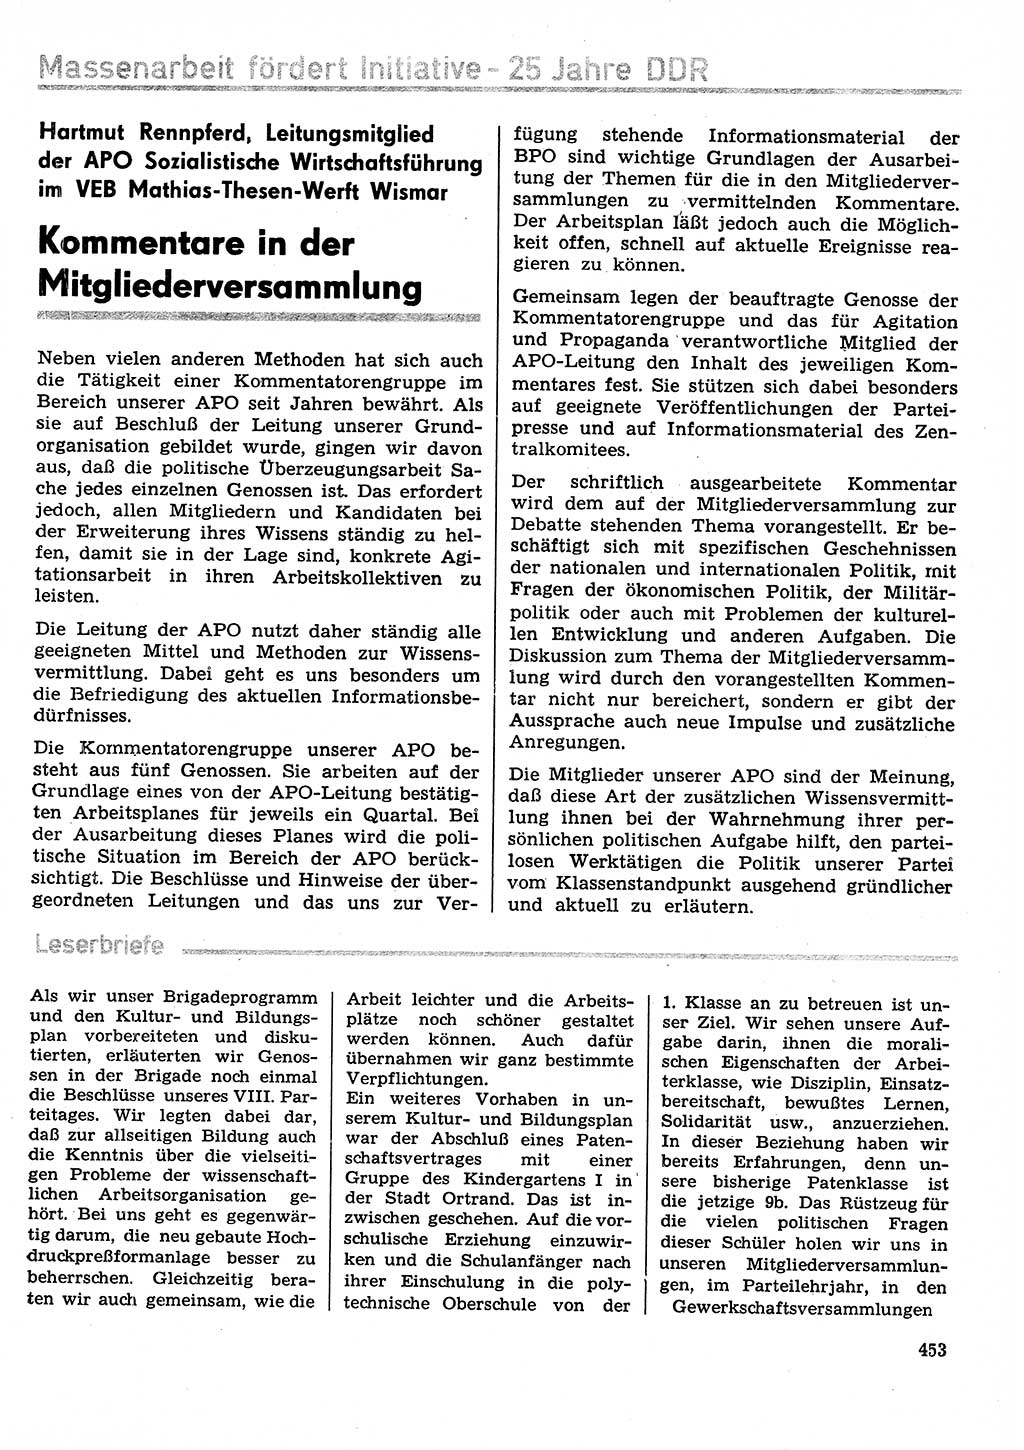 Neuer Weg (NW), Organ des Zentralkomitees (ZK) der SED (Sozialistische Einheitspartei Deutschlands) für Fragen des Parteilebens, 29. Jahrgang [Deutsche Demokratische Republik (DDR)] 1974, Seite 453 (NW ZK SED DDR 1974, S. 453)